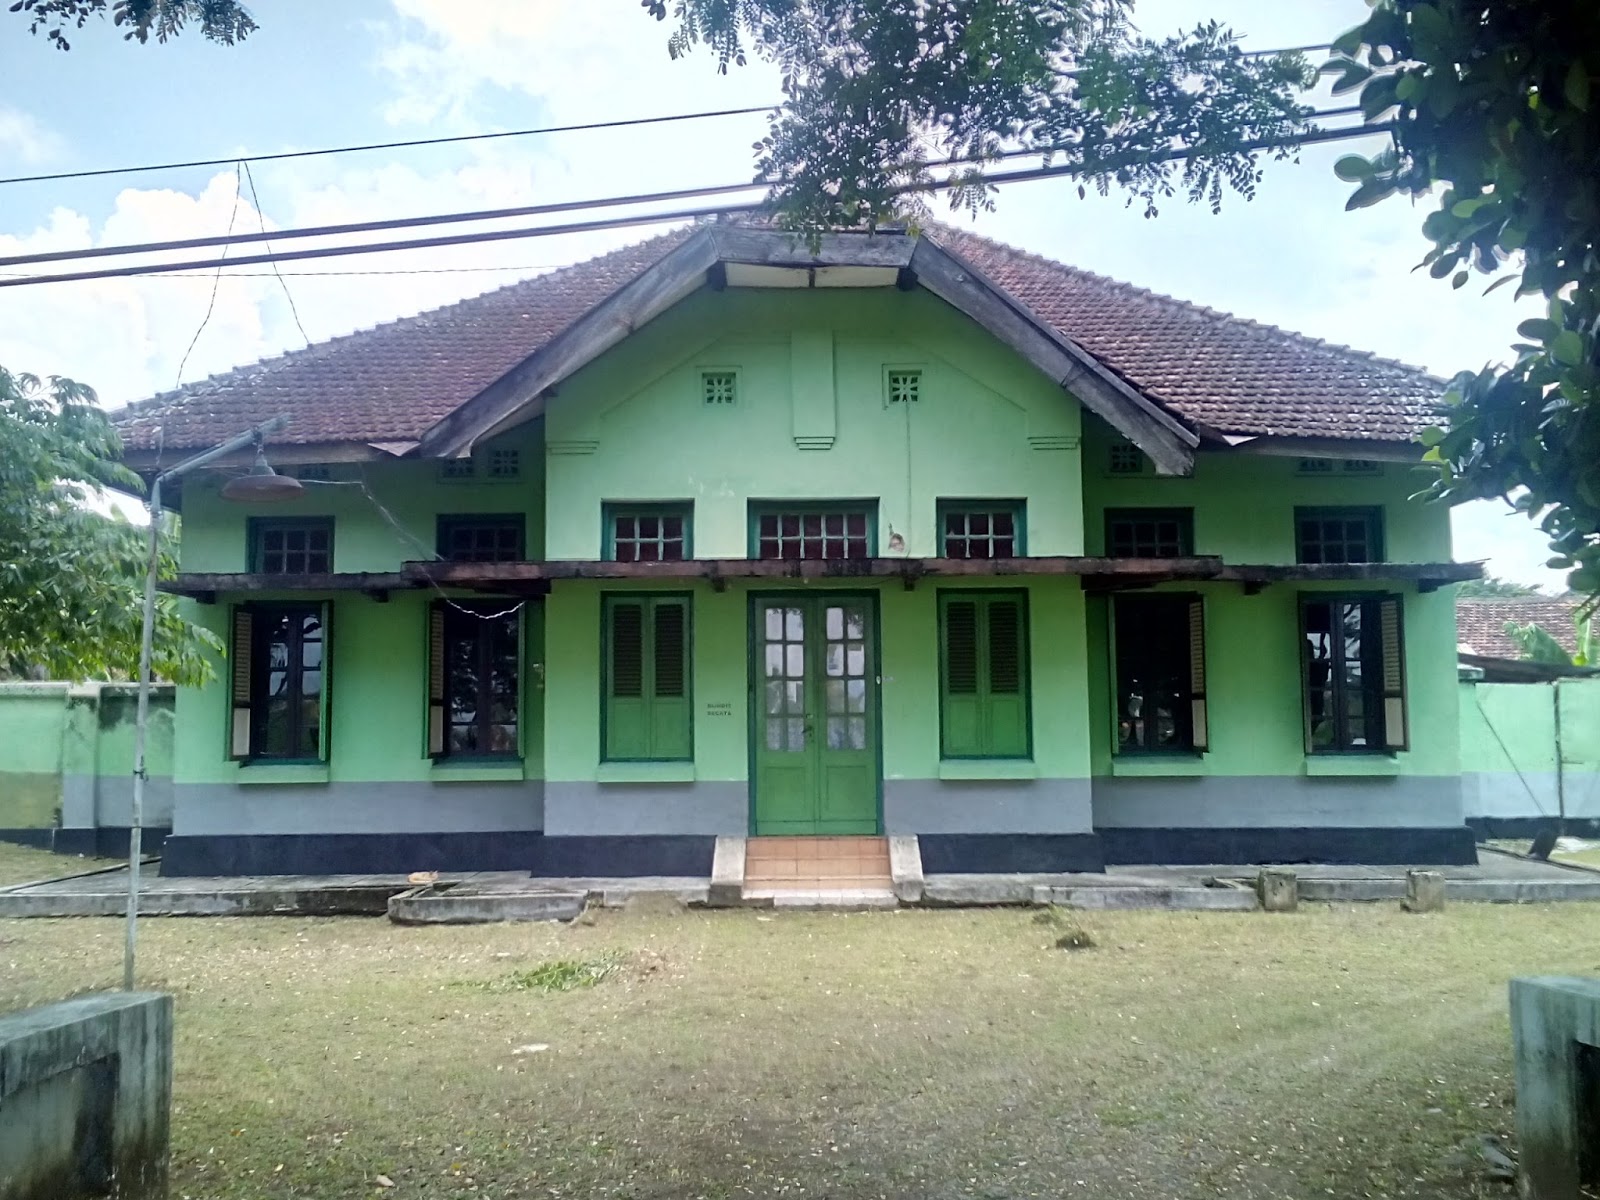 Rumah - rumah bergaya kolonial dari berbagai penjuru Indonesia (Pict